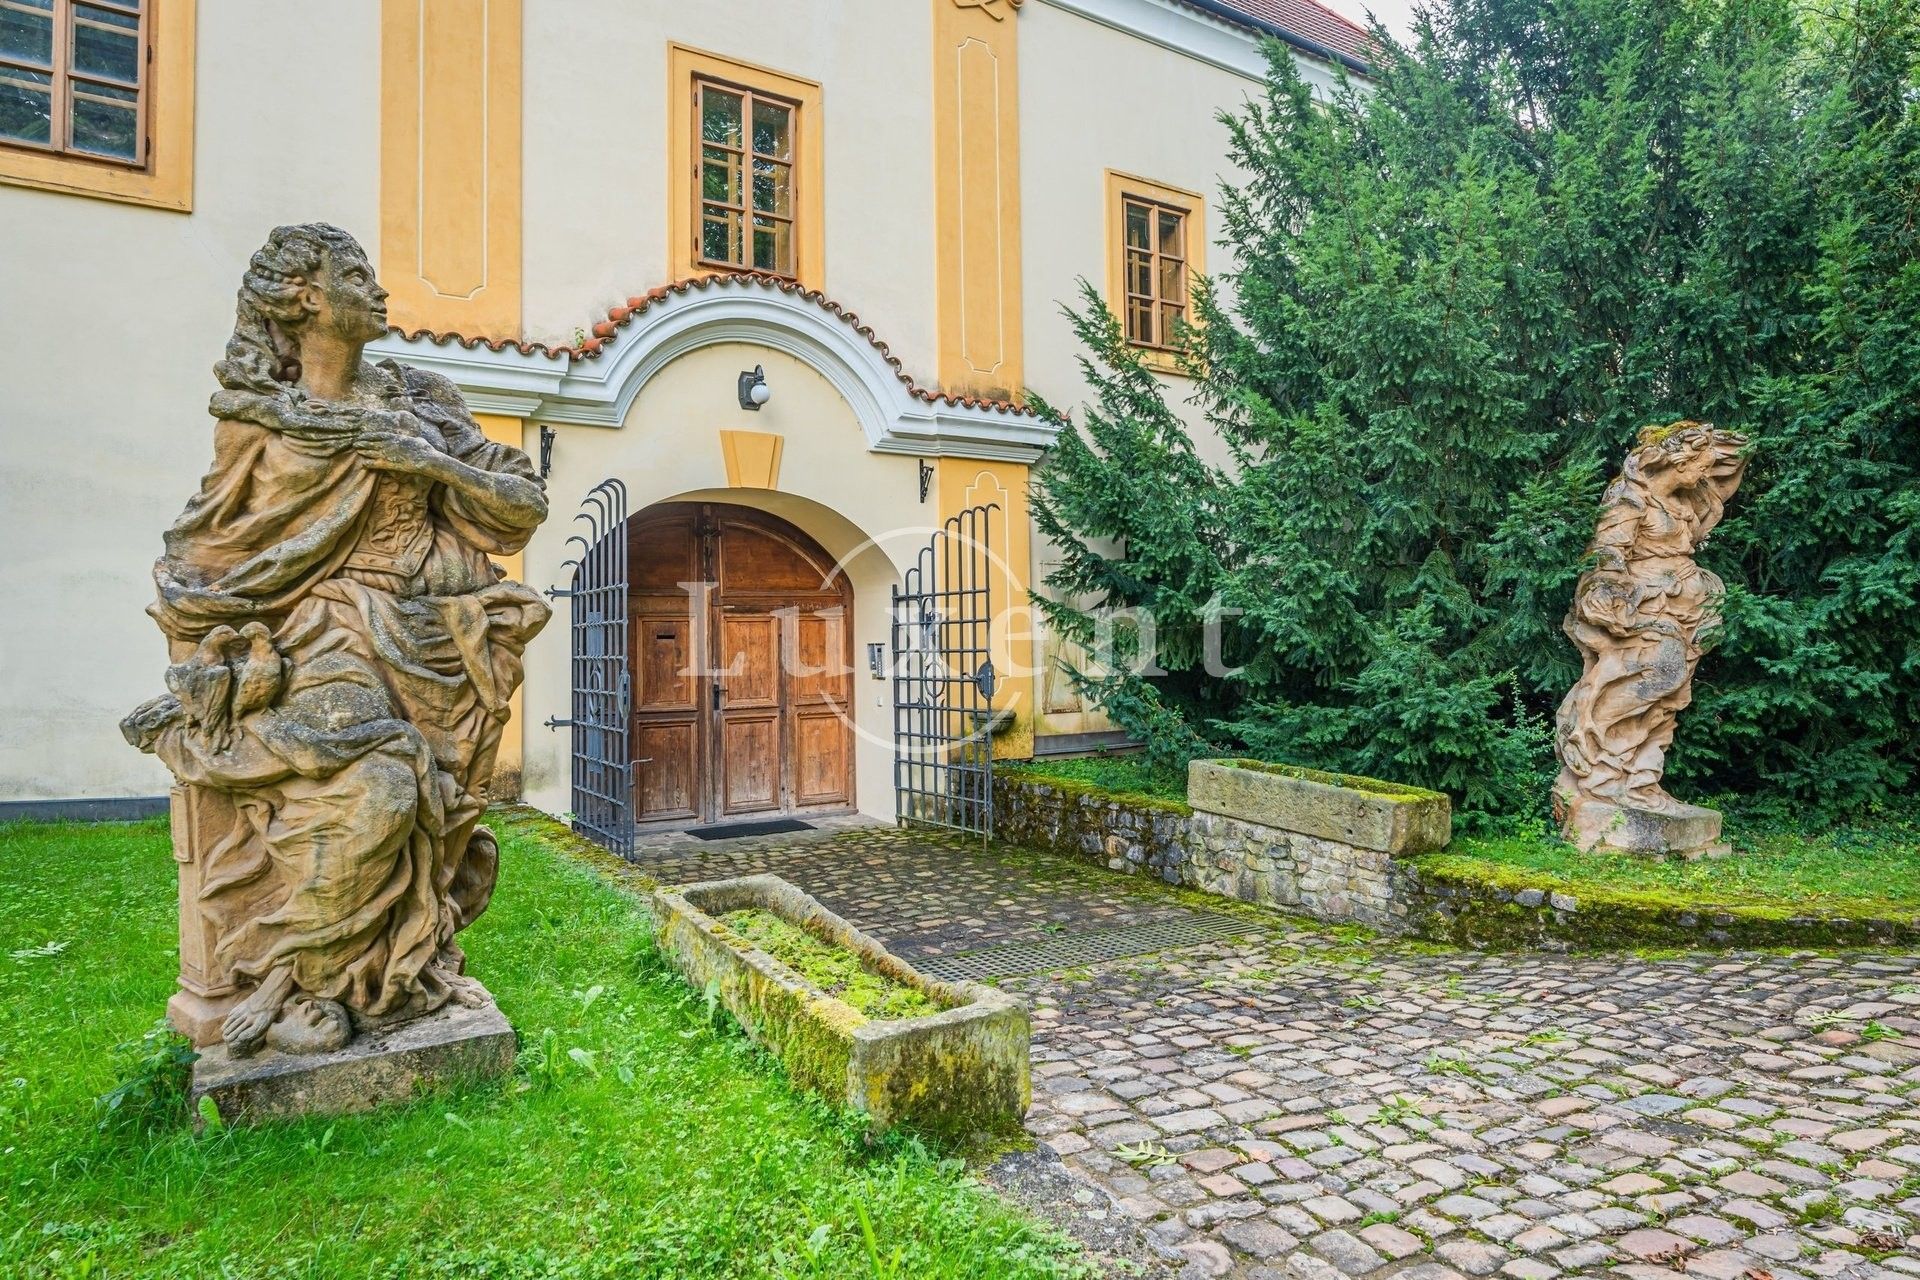 Images Uitzonderlijk vastgoed in de buurt van Praag: Fort in Třebotov